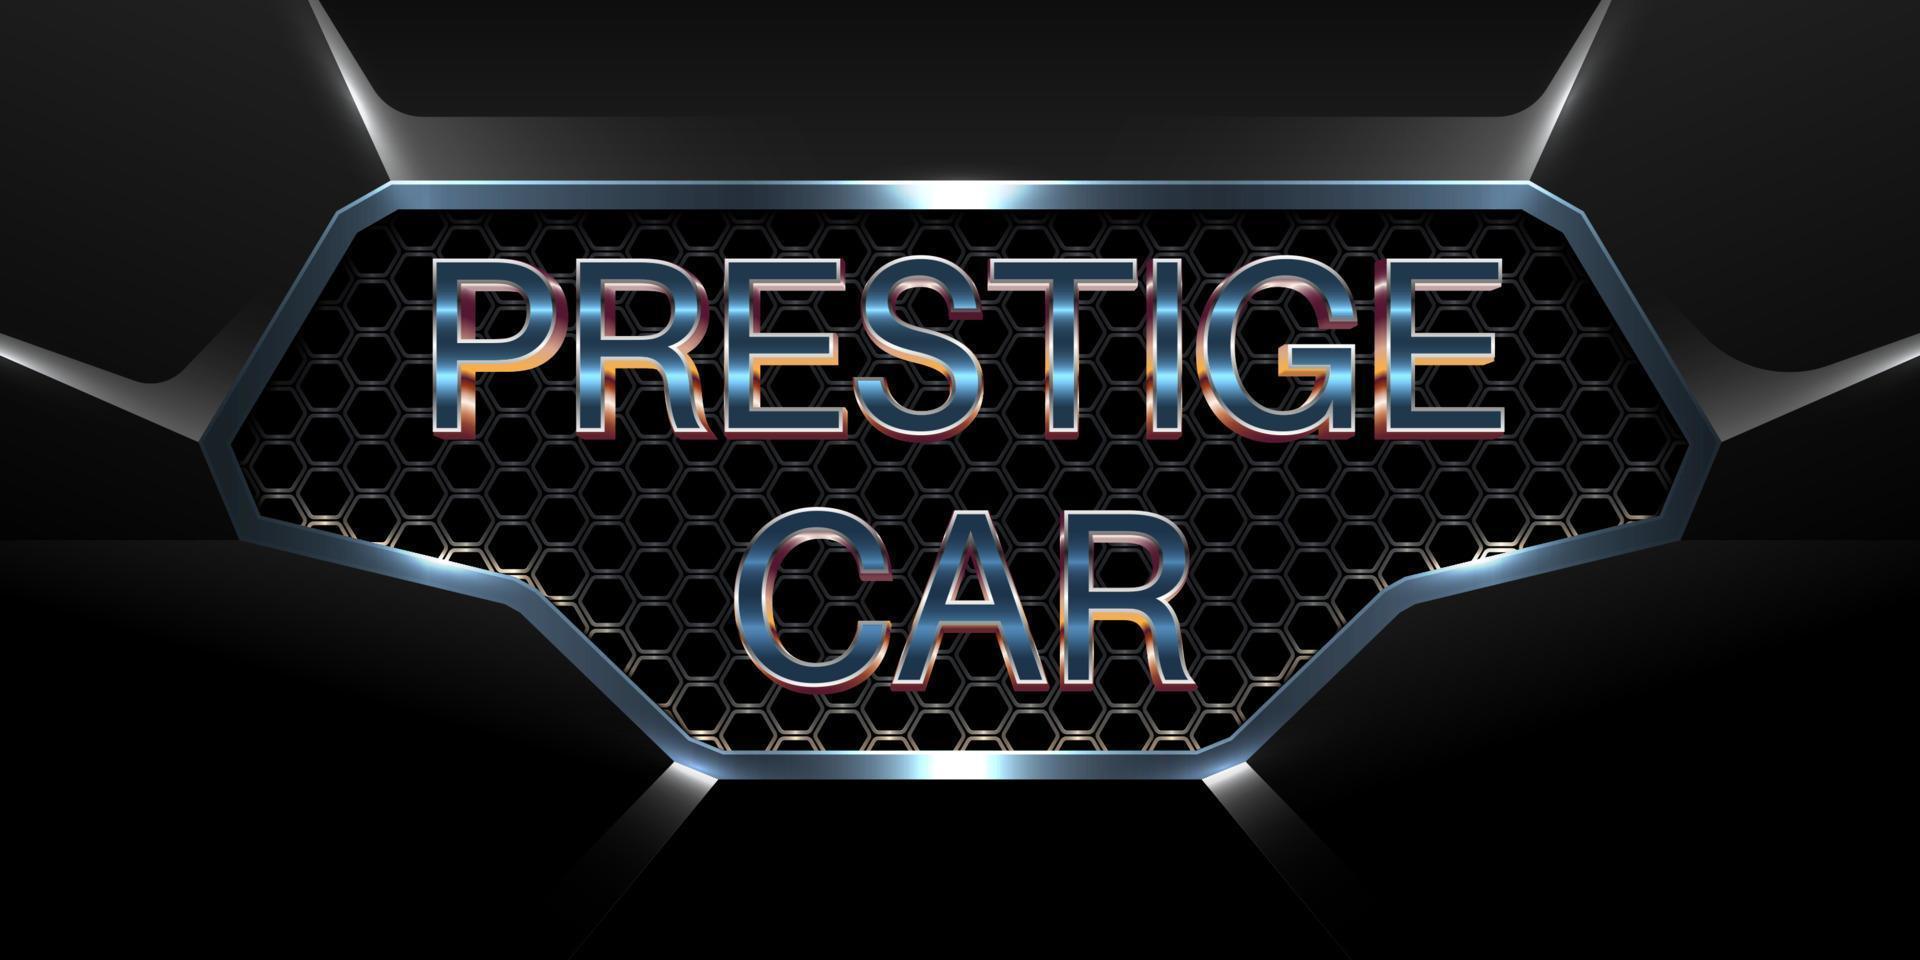 Logotipo de coche de prestigio efecto de texto en 3d con parrilla de coche metálica brillante vector